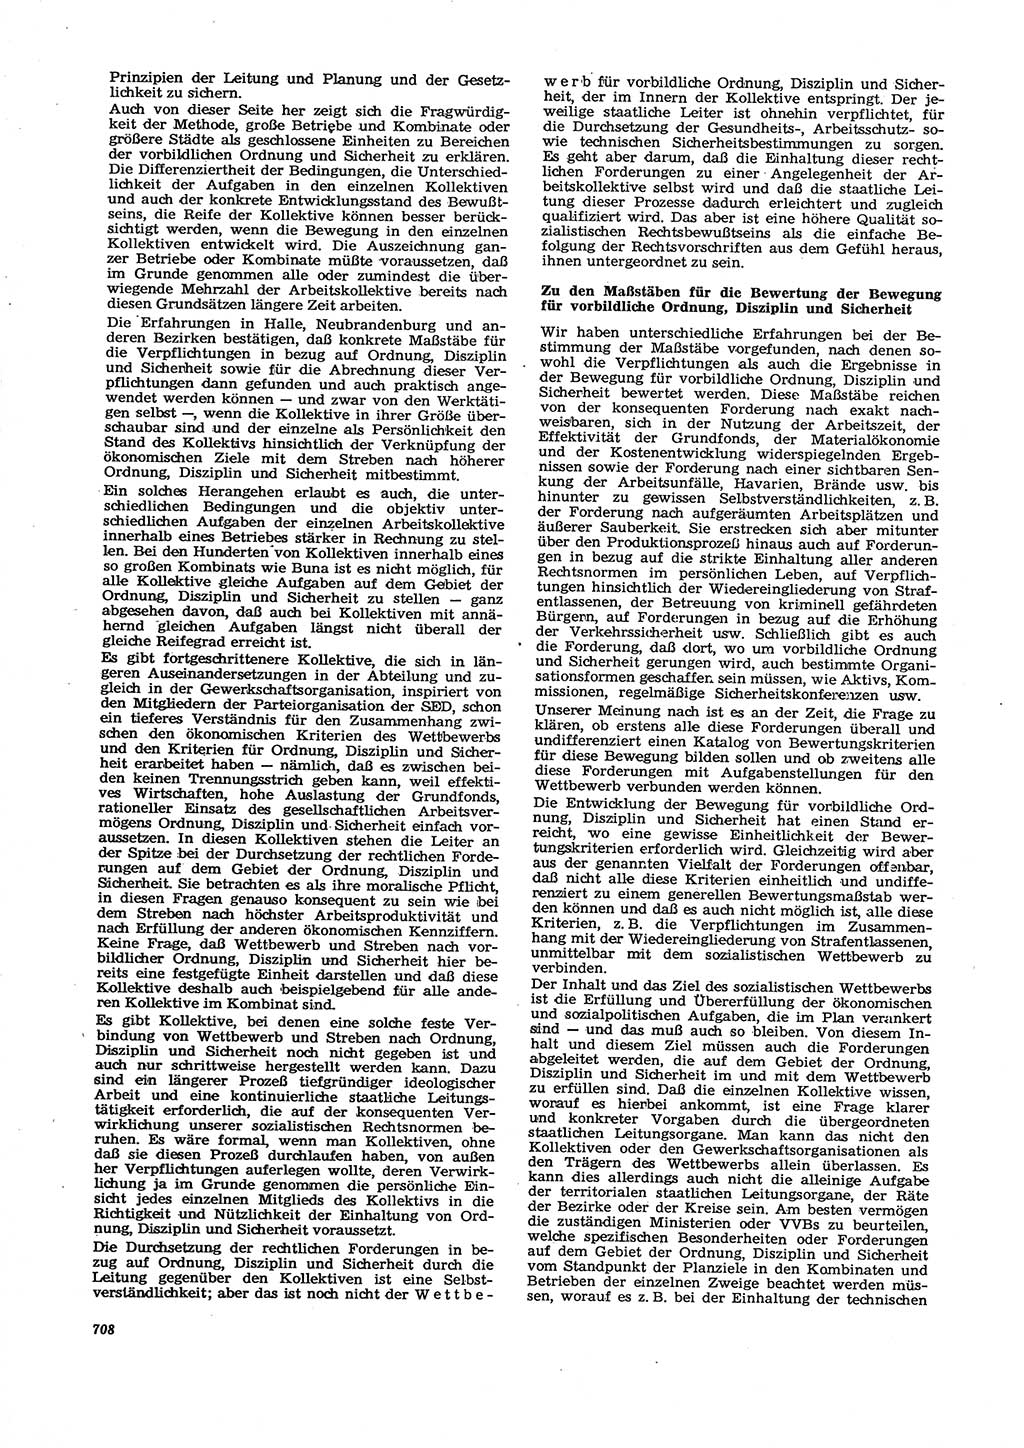 Neue Justiz (NJ), Zeitschrift für Recht und Rechtswissenschaft [Deutsche Demokratische Republik (DDR)], 29. Jahrgang 1975, Seite 708 (NJ DDR 1975, S. 708)